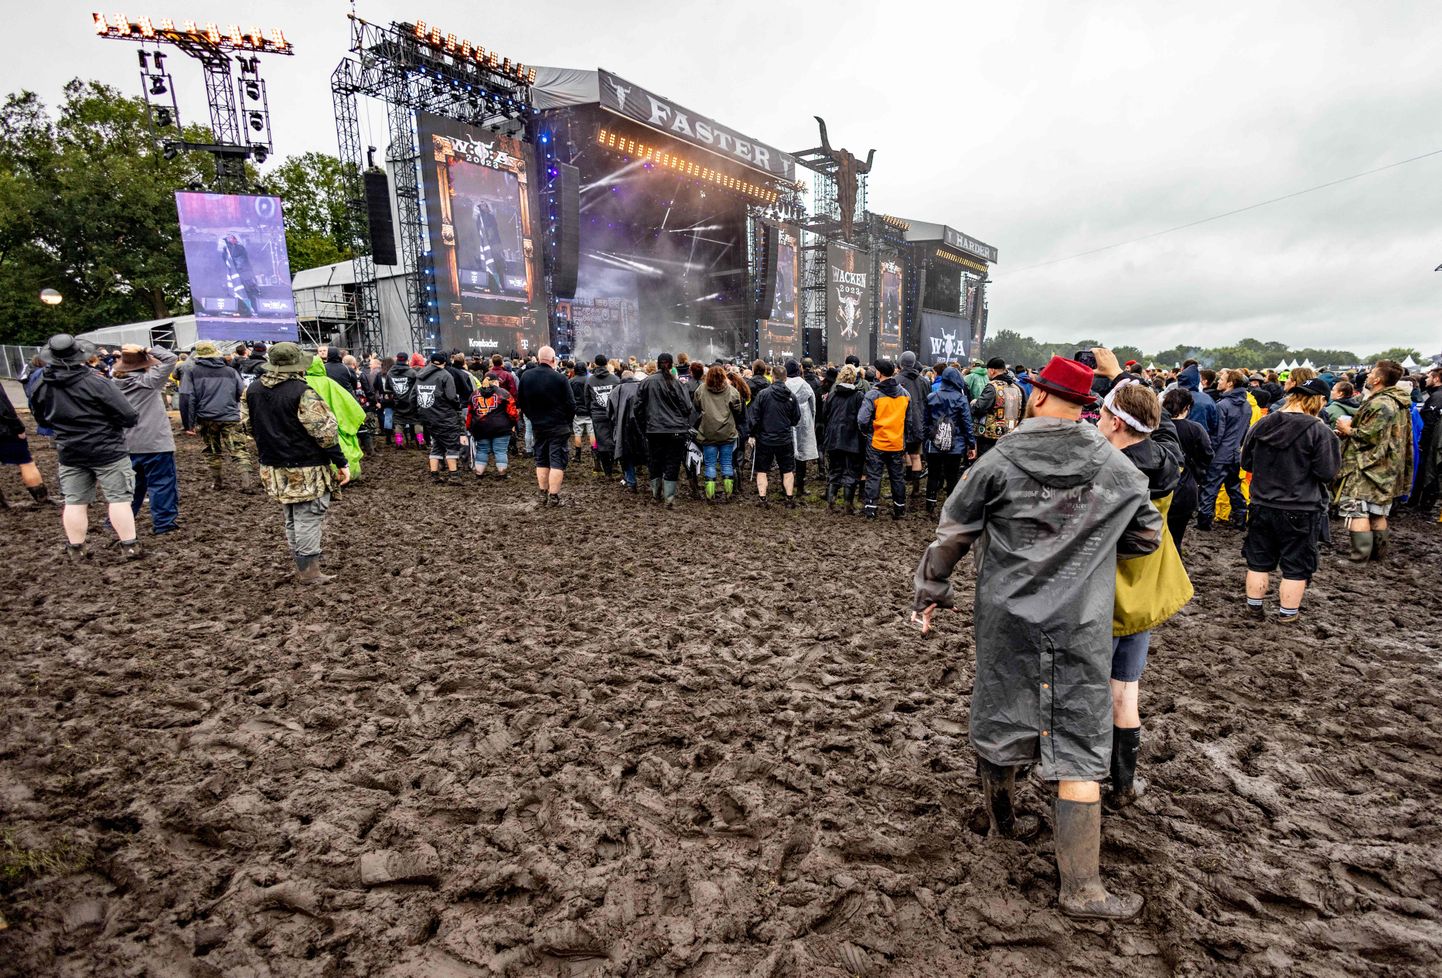 Põhja-Saksmaal Schleswig-Holsteinis 2. - 5. augustini toimuva metalfestivali Wacken Open Air 2023 ala on muutunud vihma tõttu mudamülkaks